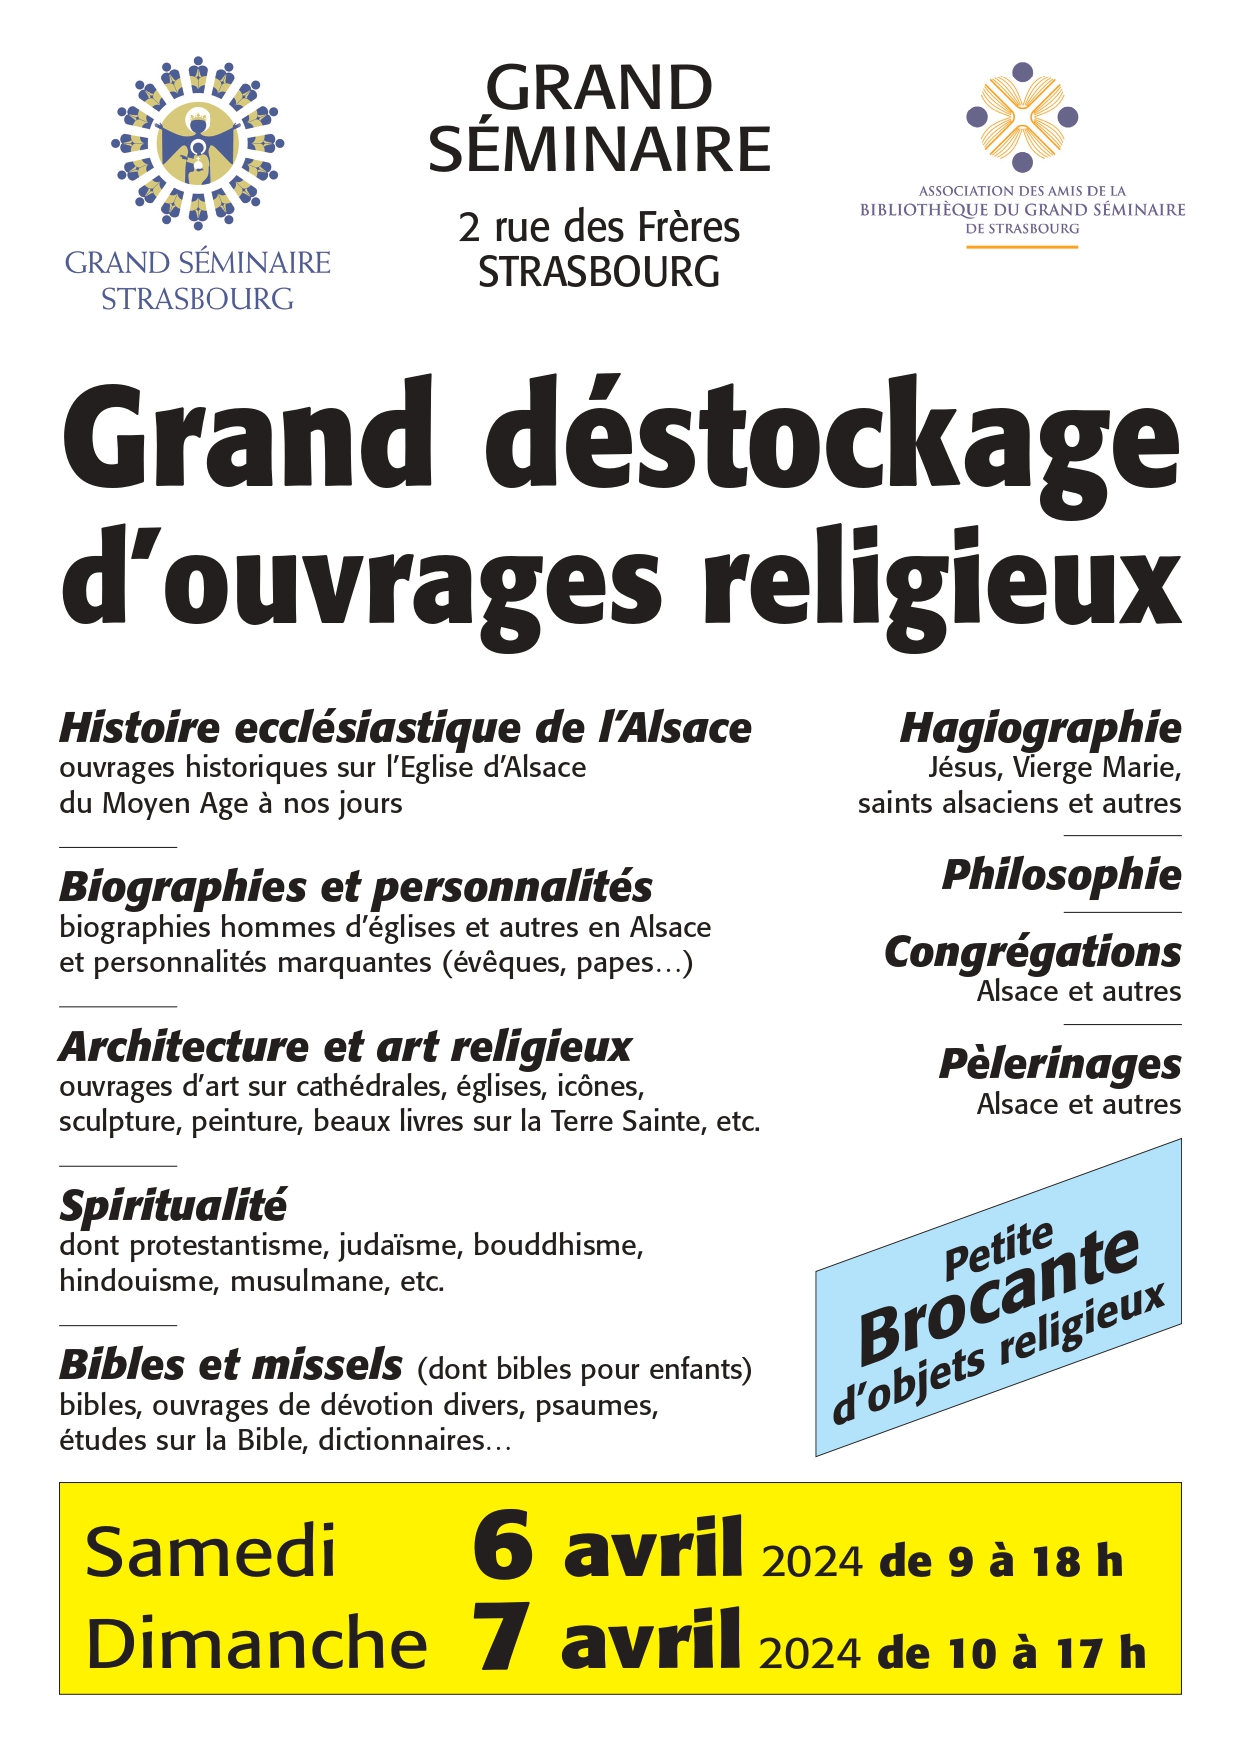 Grande Vente d’ouvrages religieux au Grand Séminaire de Strasbourg